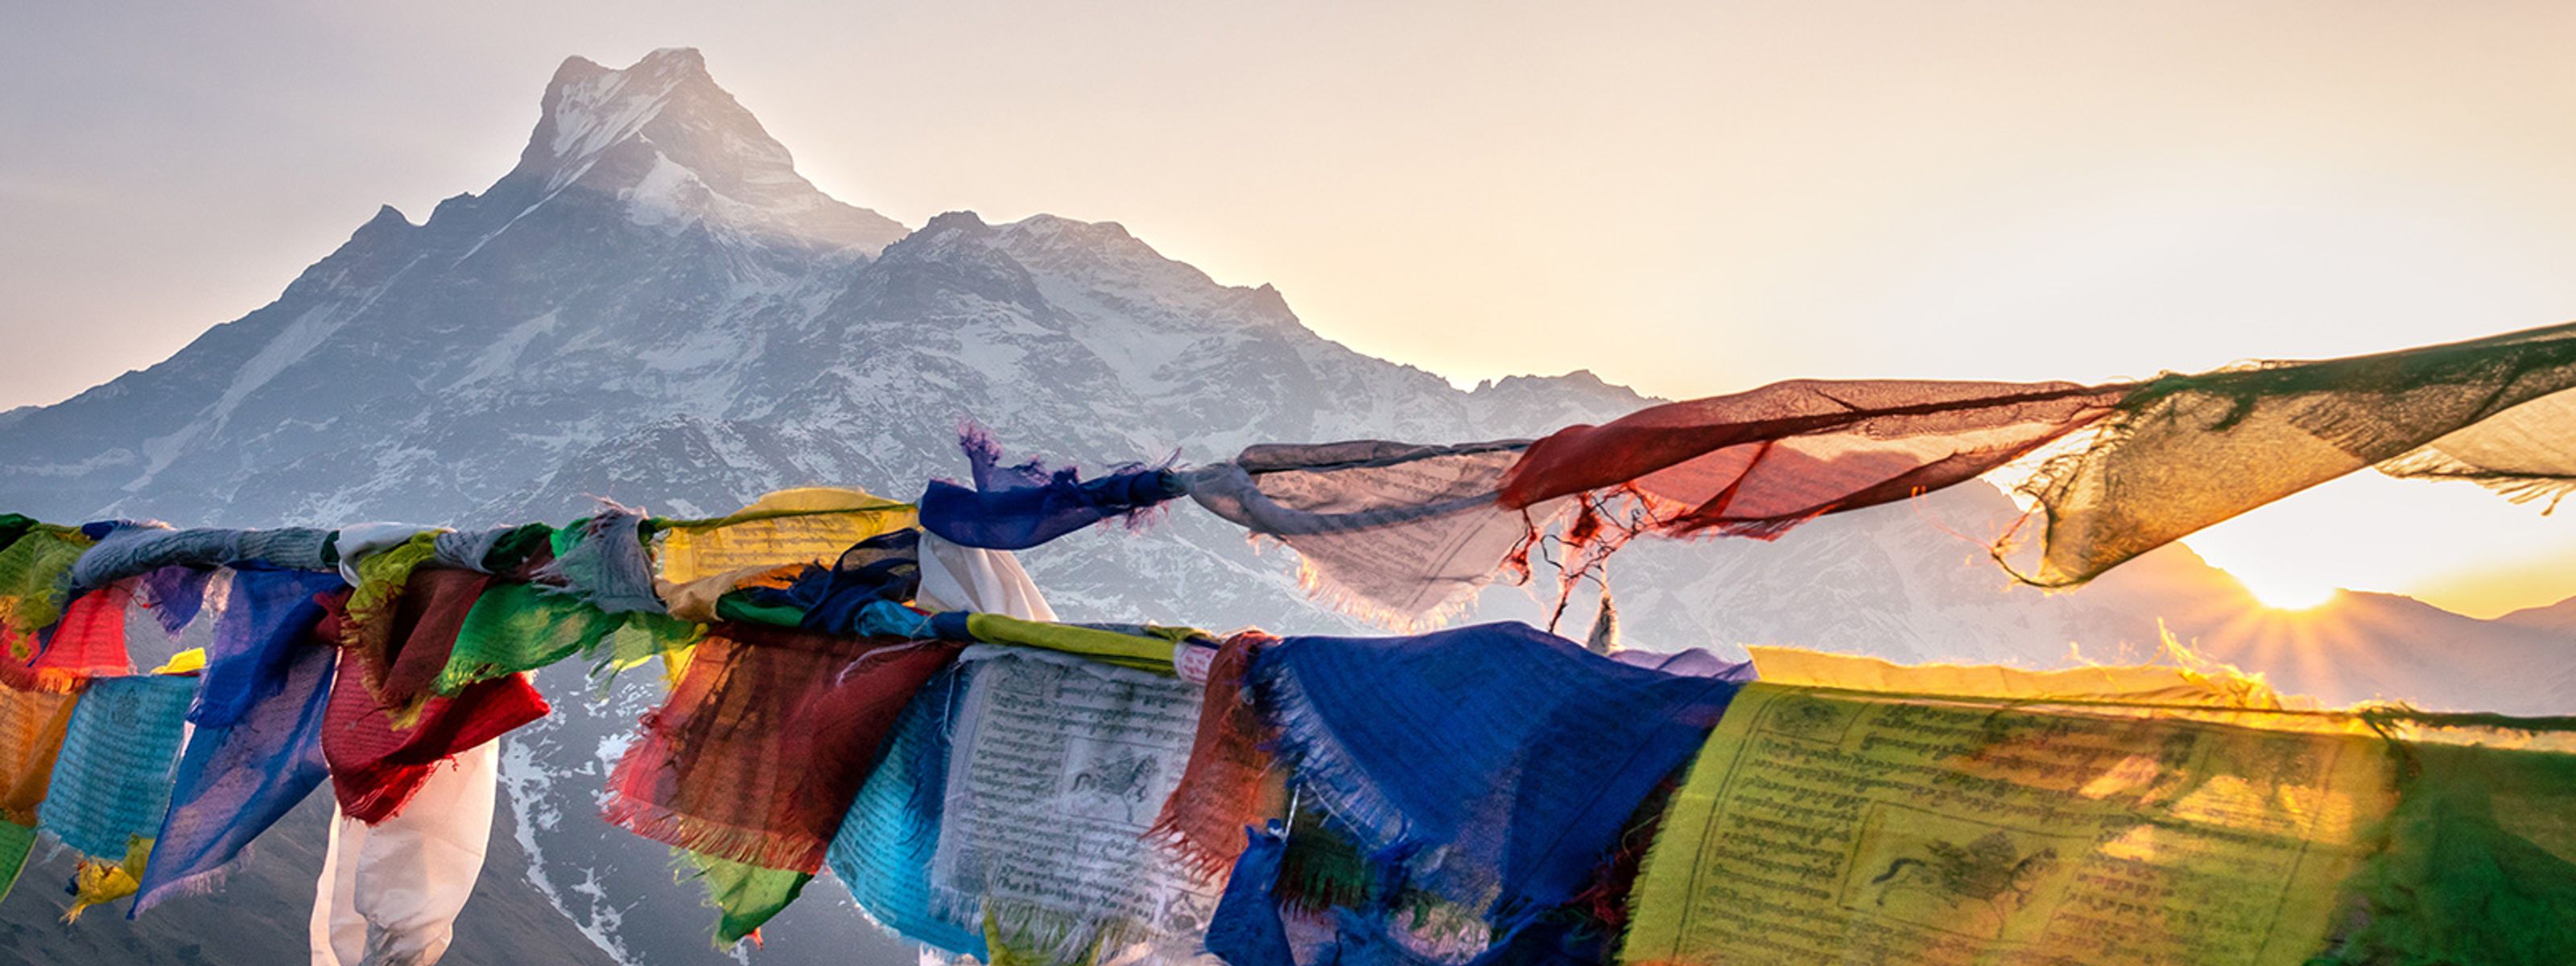 Blick vom Poon Hill auf das Annapurna-Massiv, Nepal  © AdobeStock vlysytsya